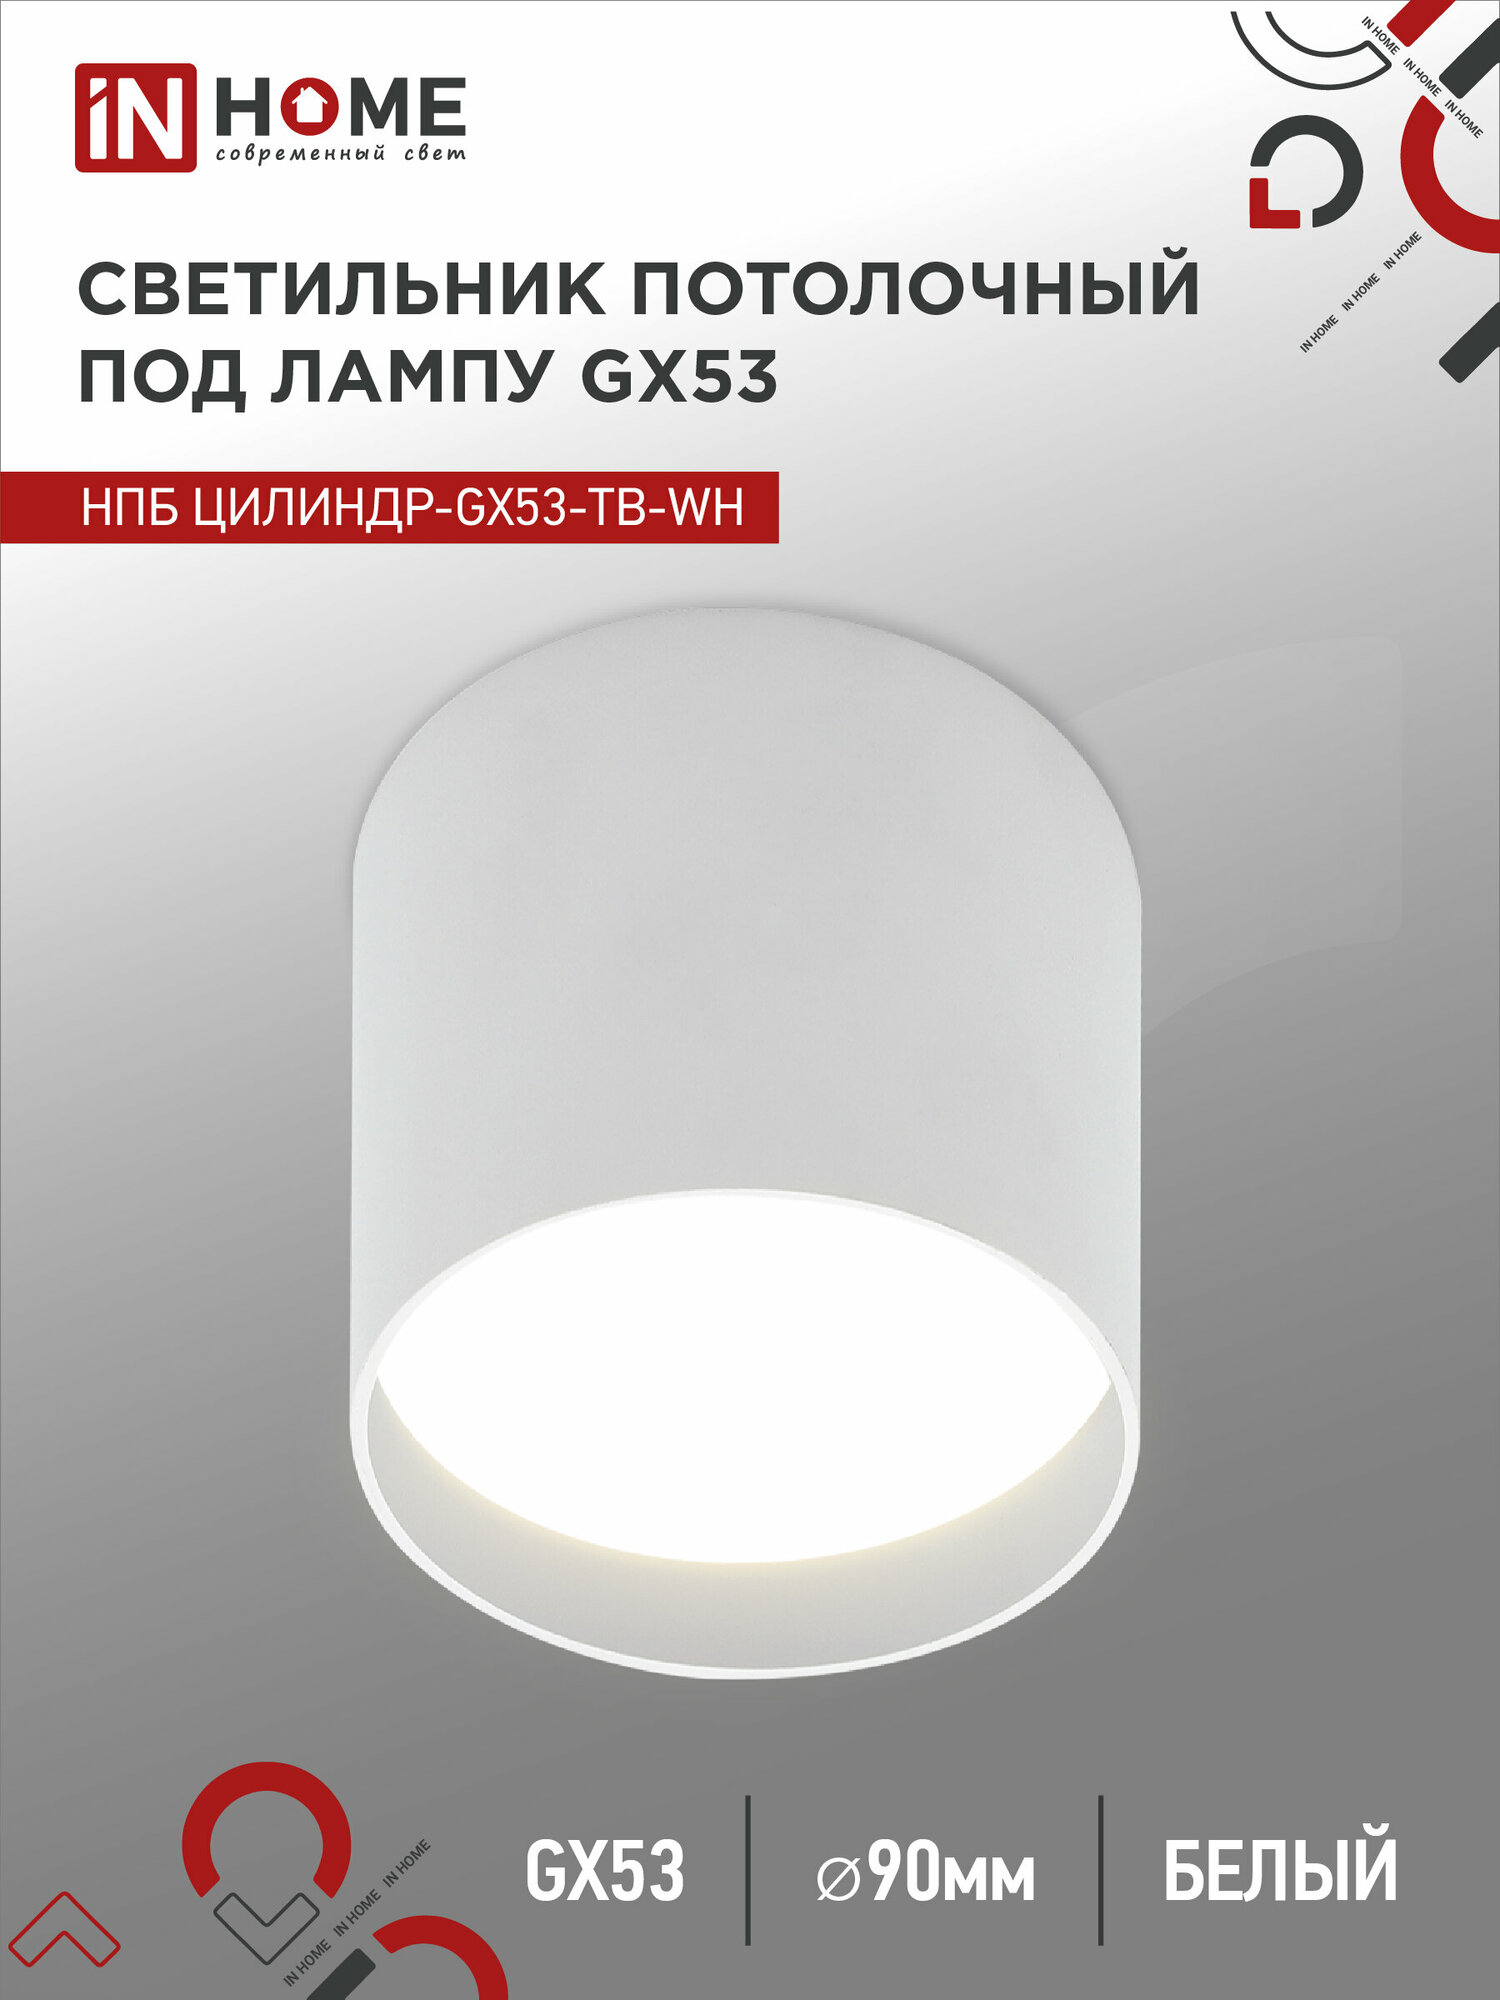 Светильник потолочный НПБ ЦИЛИНДР-GX53-TB-WH под GX53 90x90мм белый IN HOME